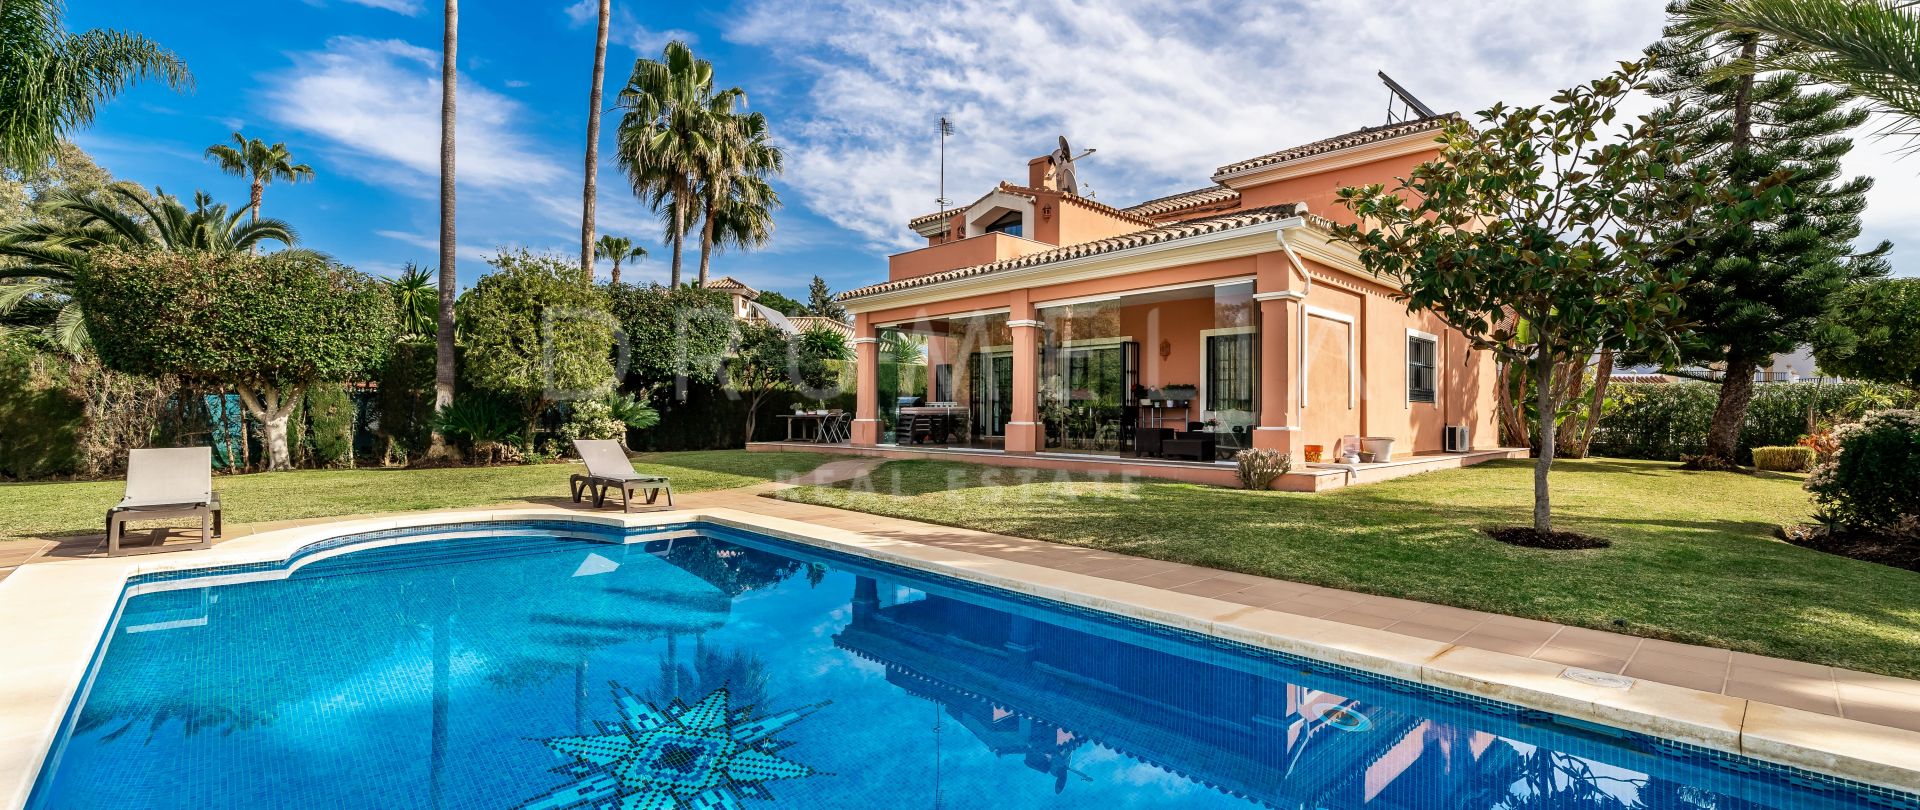 Preciosa villa de lujo de estilo mediterráneo en la encantadora zona de Atalaya, Estepona